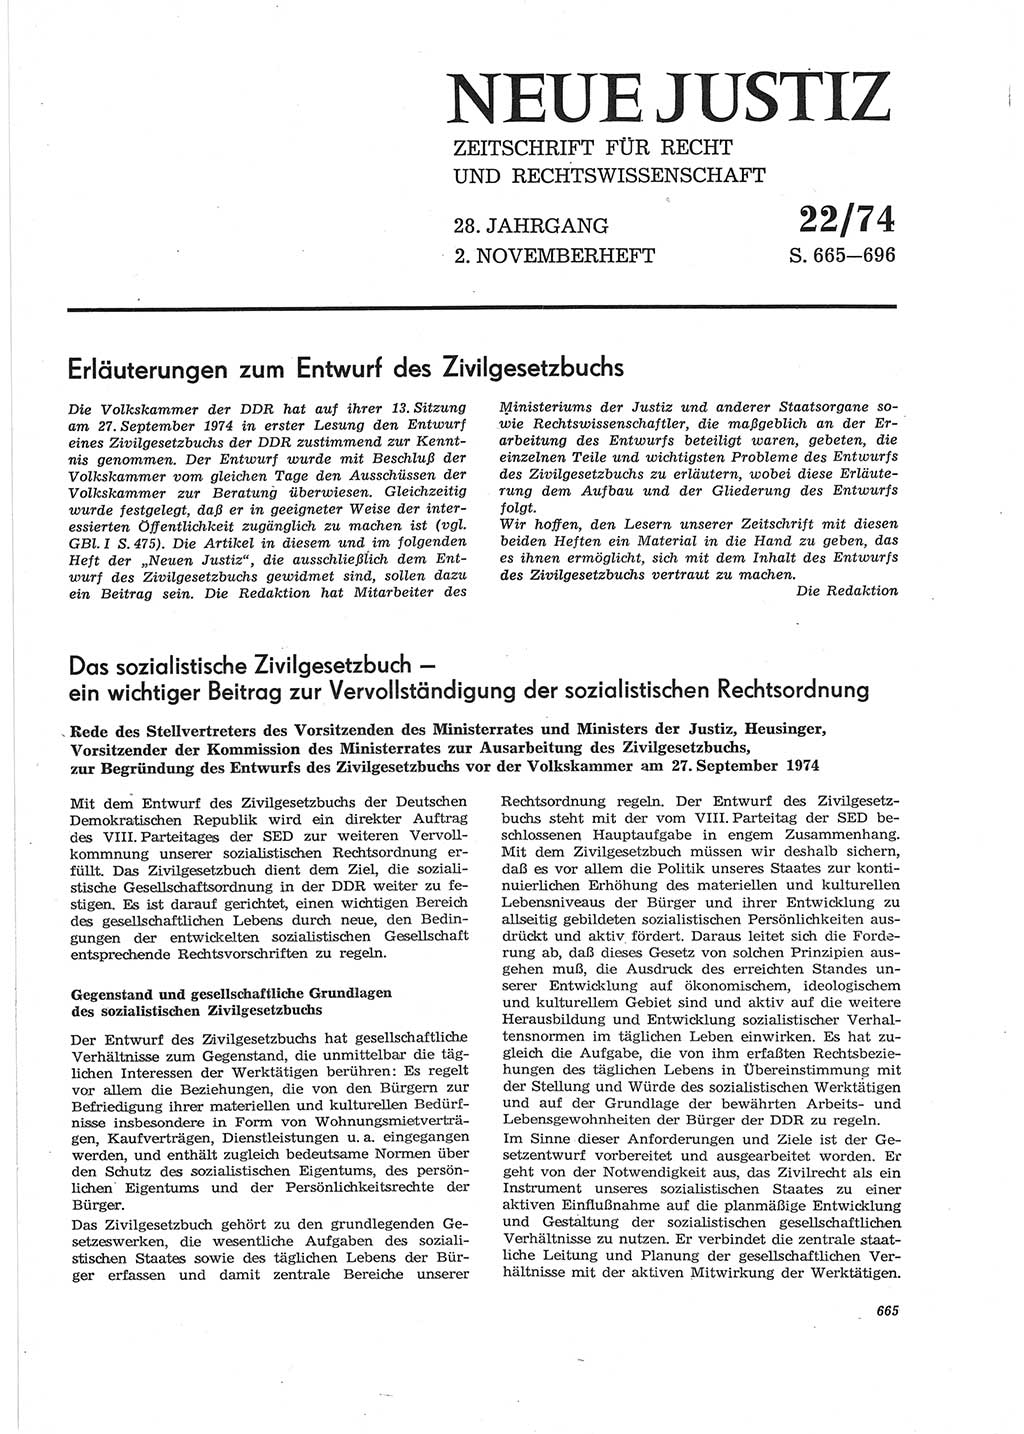 Neue Justiz (NJ), Zeitschrift für Recht und Rechtswissenschaft [Deutsche Demokratische Republik (DDR)], 28. Jahrgang 1974, Seite 665 (NJ DDR 1974, S. 665)